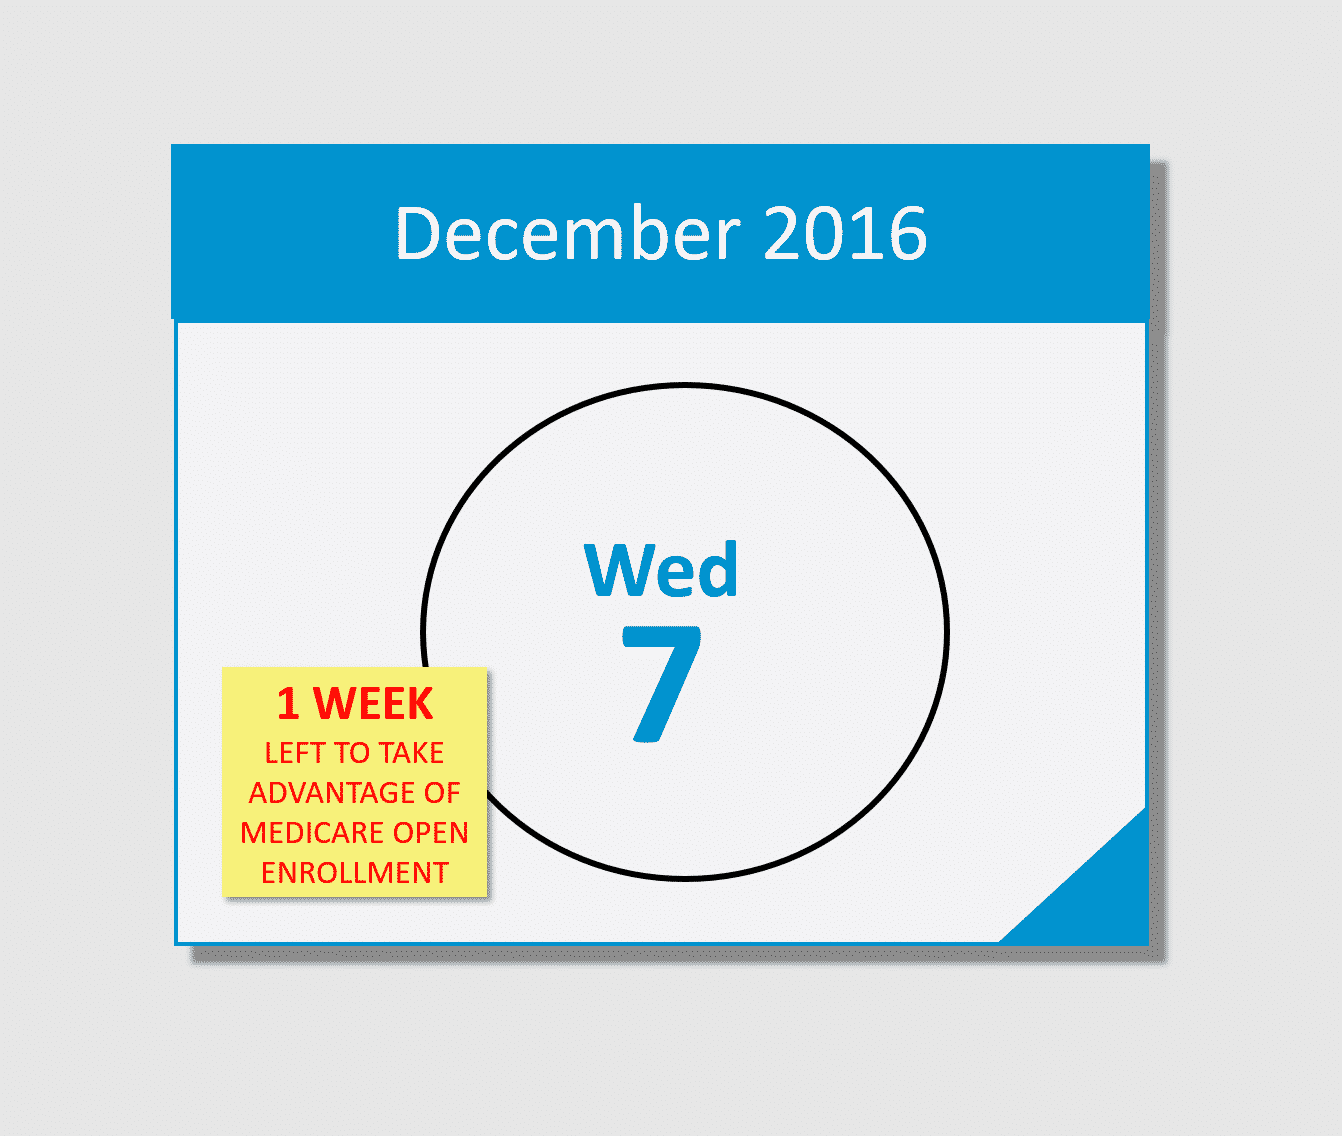 Don’t forget, Medicare Open Enrollment ends December 7th!